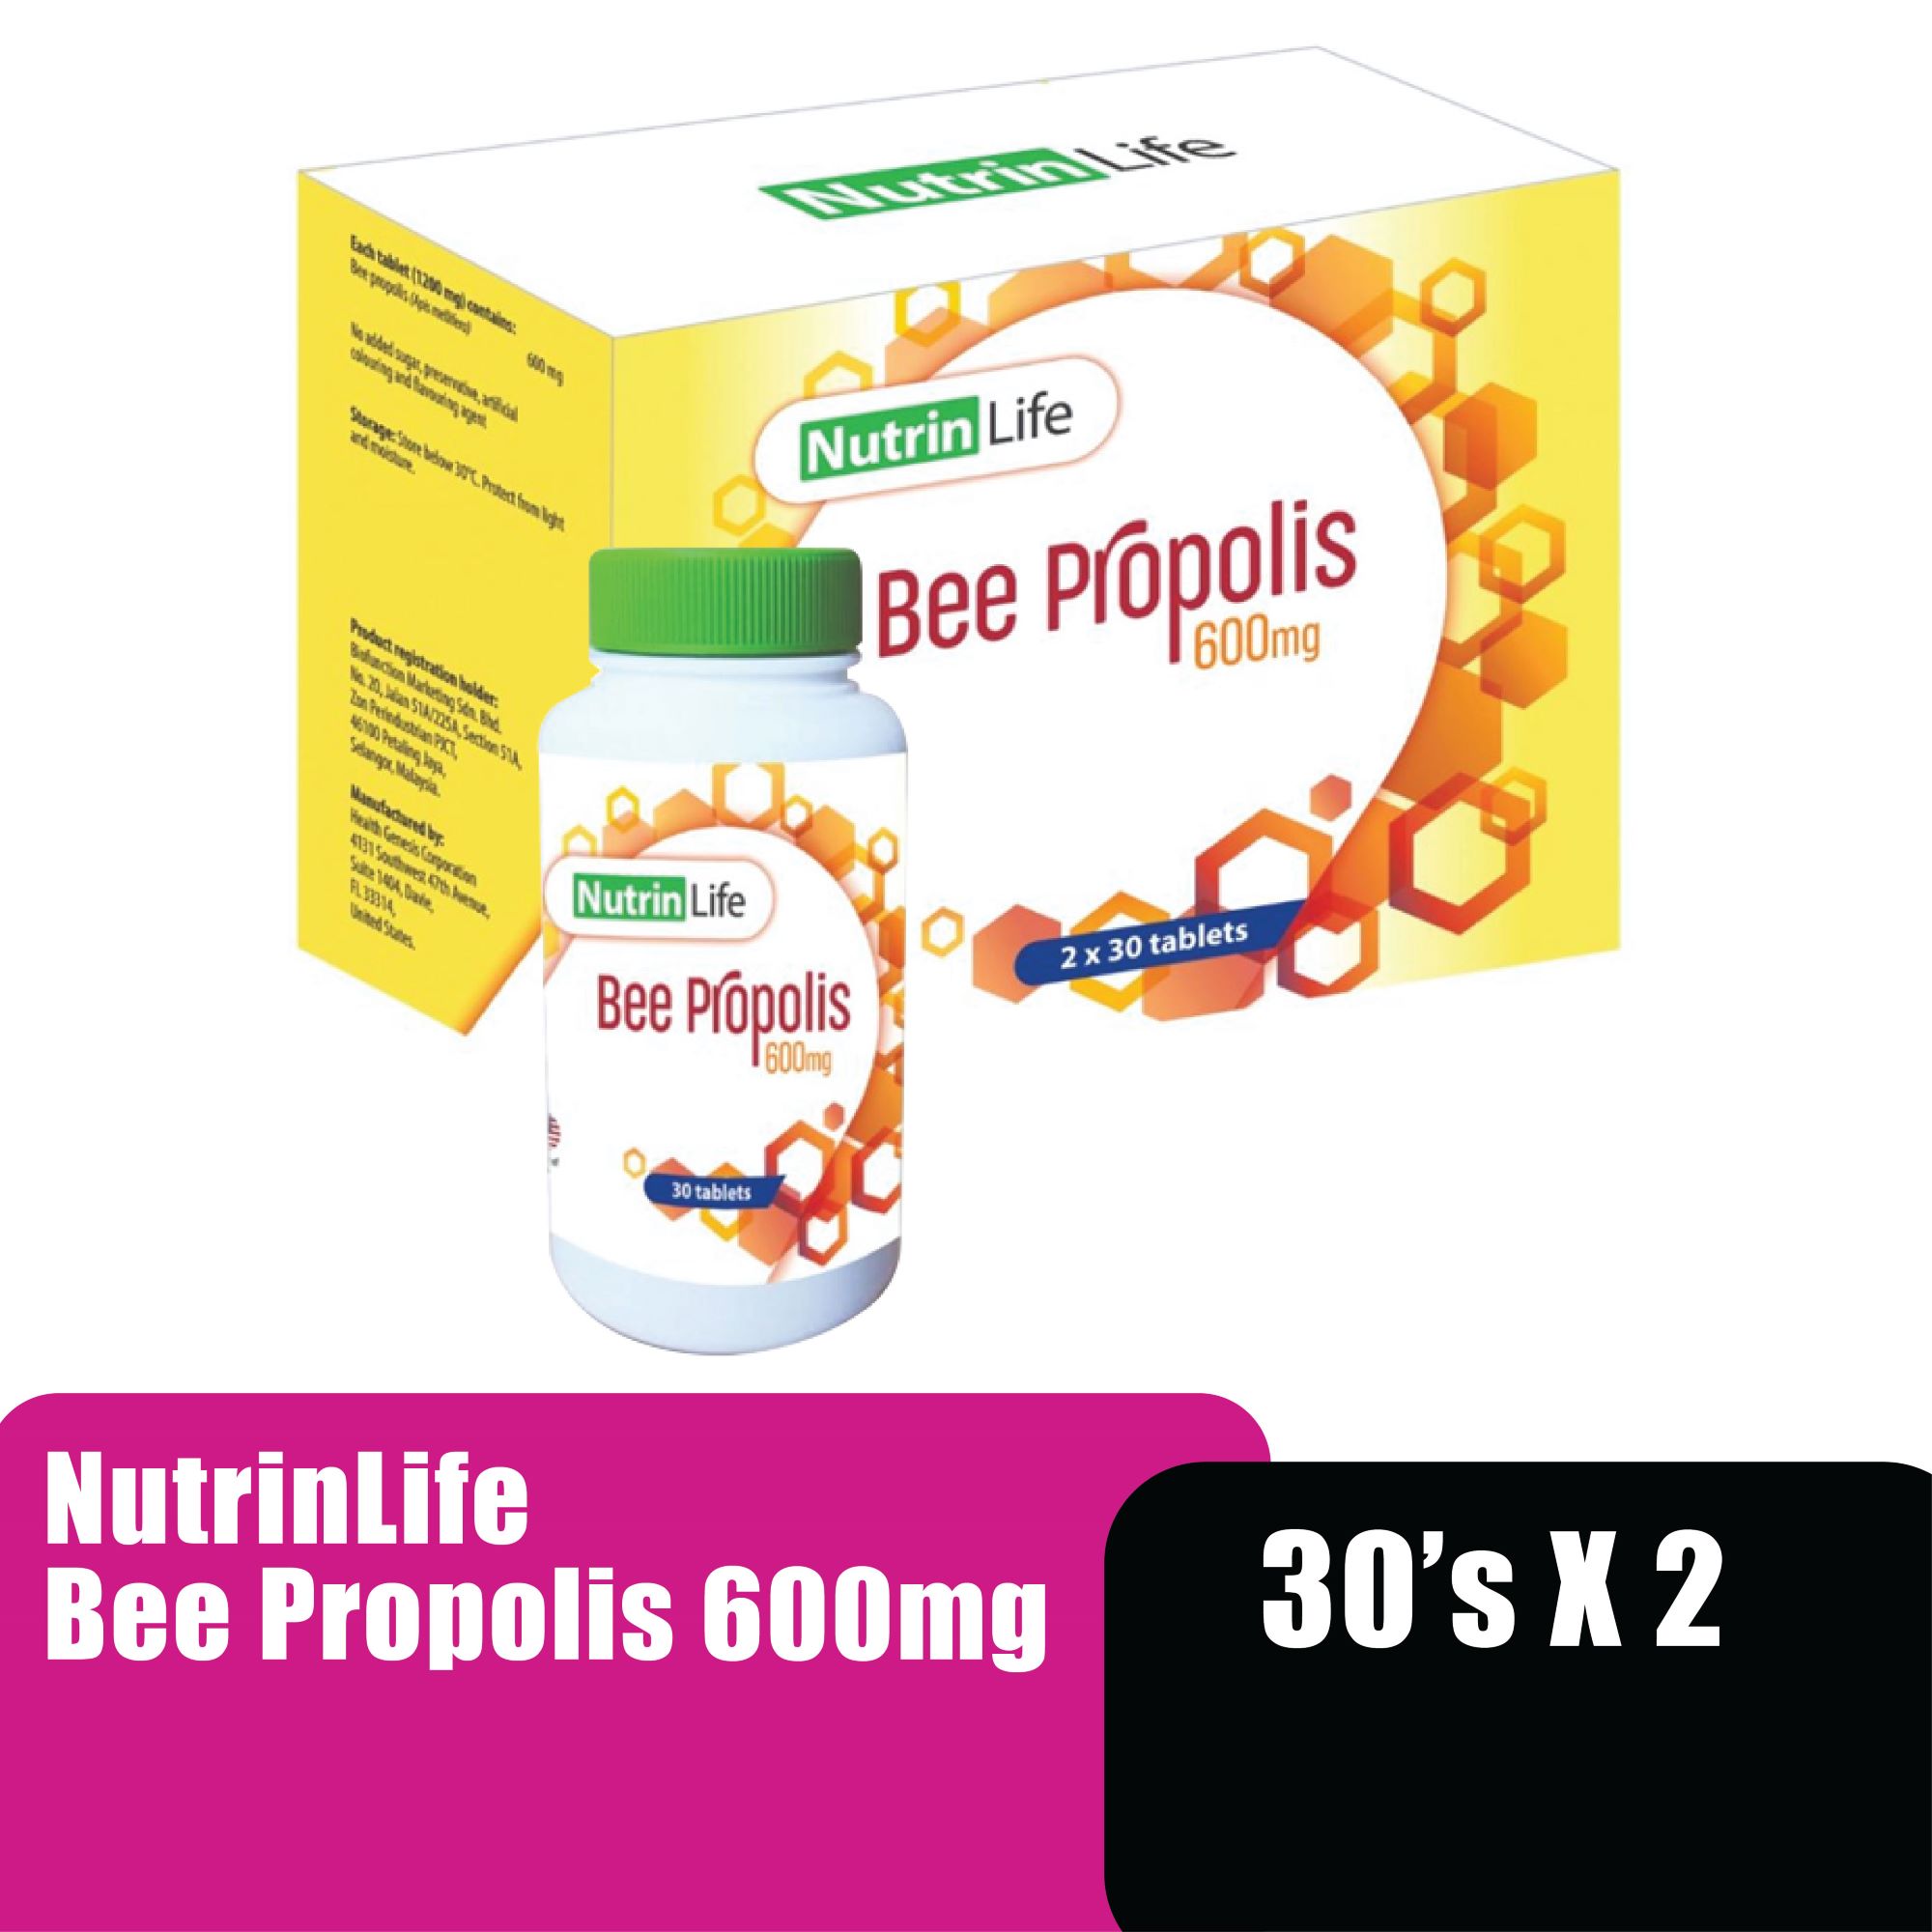 NUTRINLIFE BEE PROPOLIS 600MG 30'S X 2